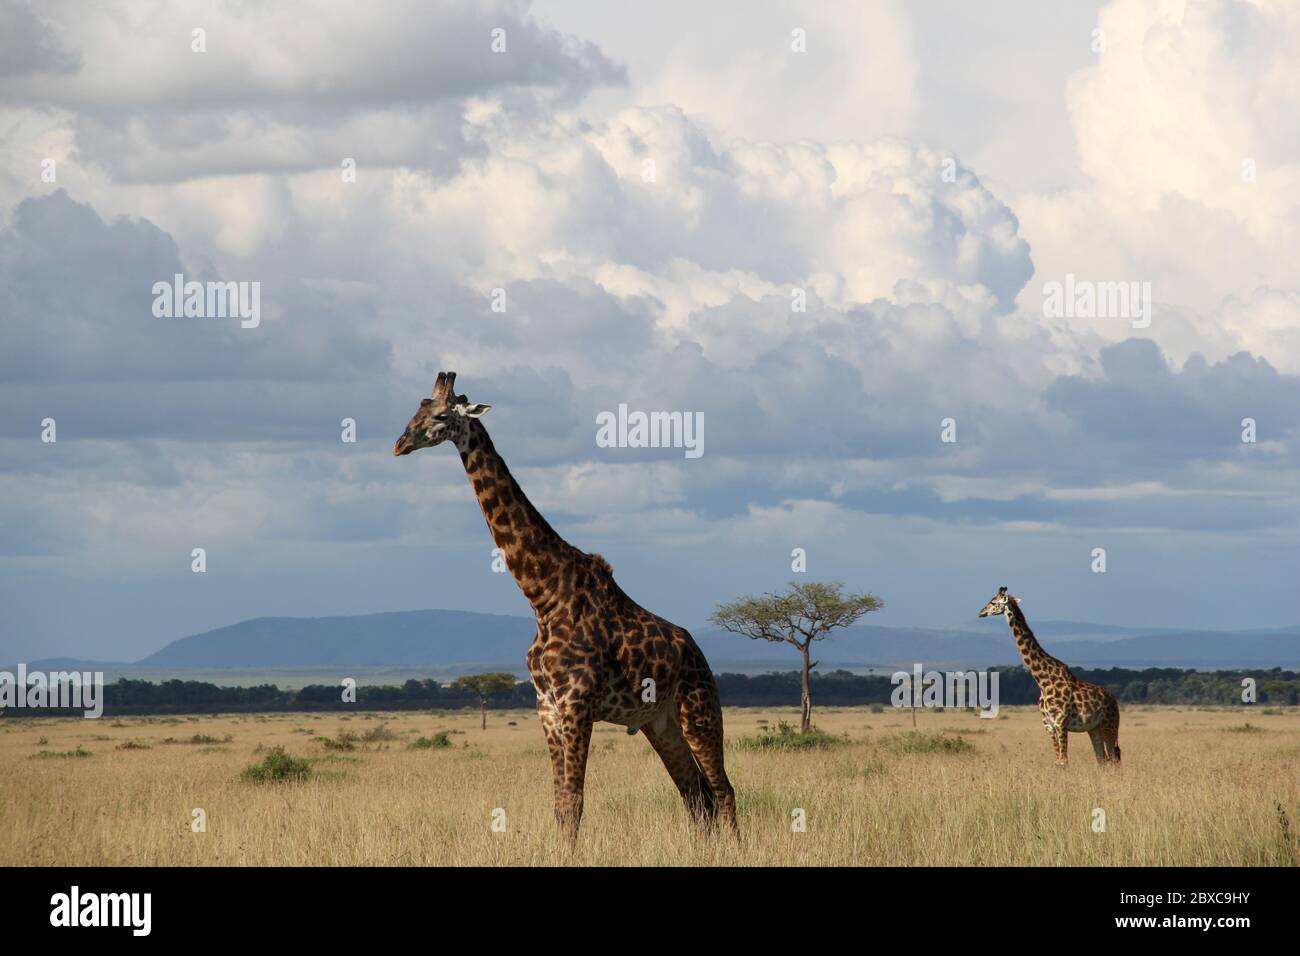 Vue panoramique sur la savane kenyane, les girafes se déplacent paisiblement dans les prairies sèches, en arrière-plan d'impressionnantes formations de nuages Banque D'Images